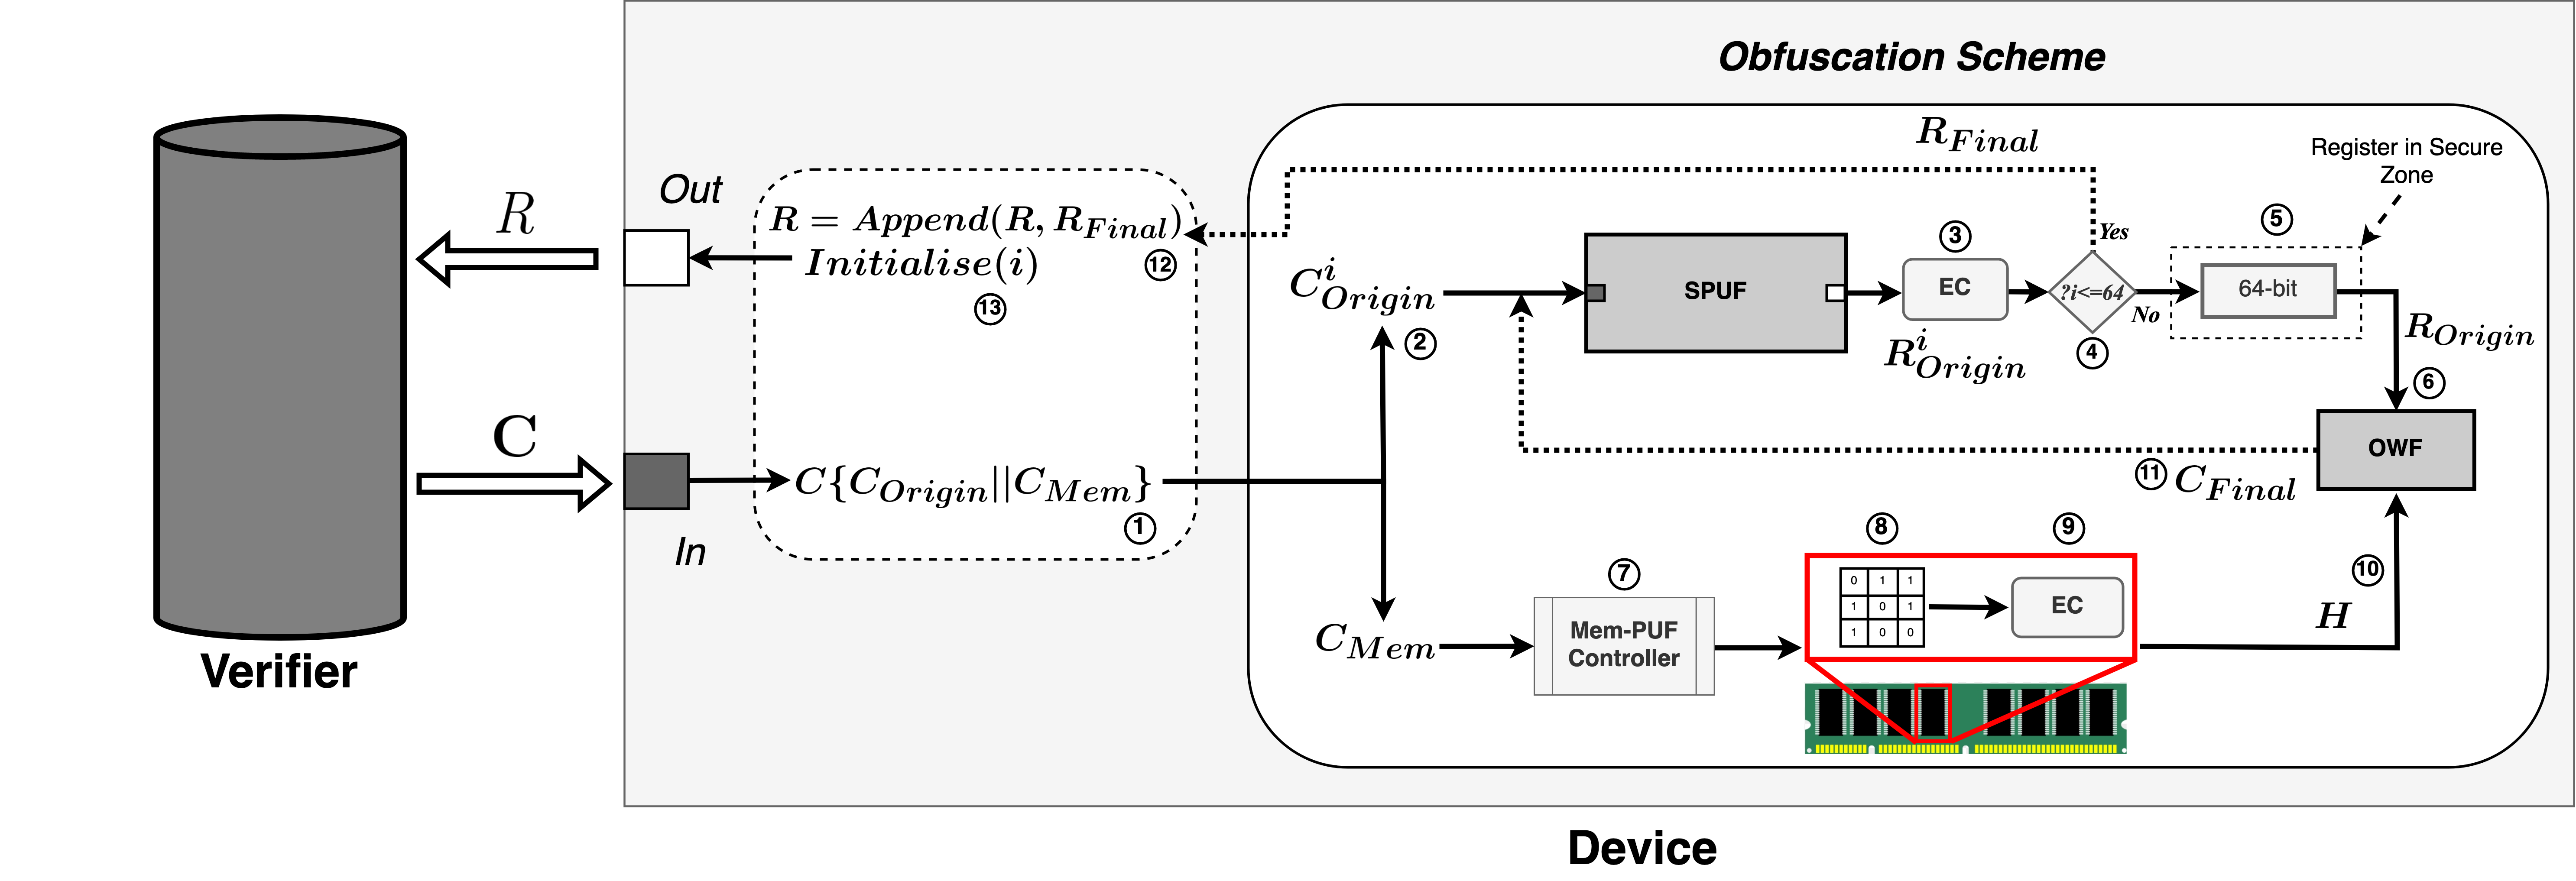 Ein generisches Verschleierungs-Framework zur Verhinderung von ML-Angriffen auf Strong-PUFs durch Ausnutzung von DRAM-PUFs - Wissenschaftliche Arbeit